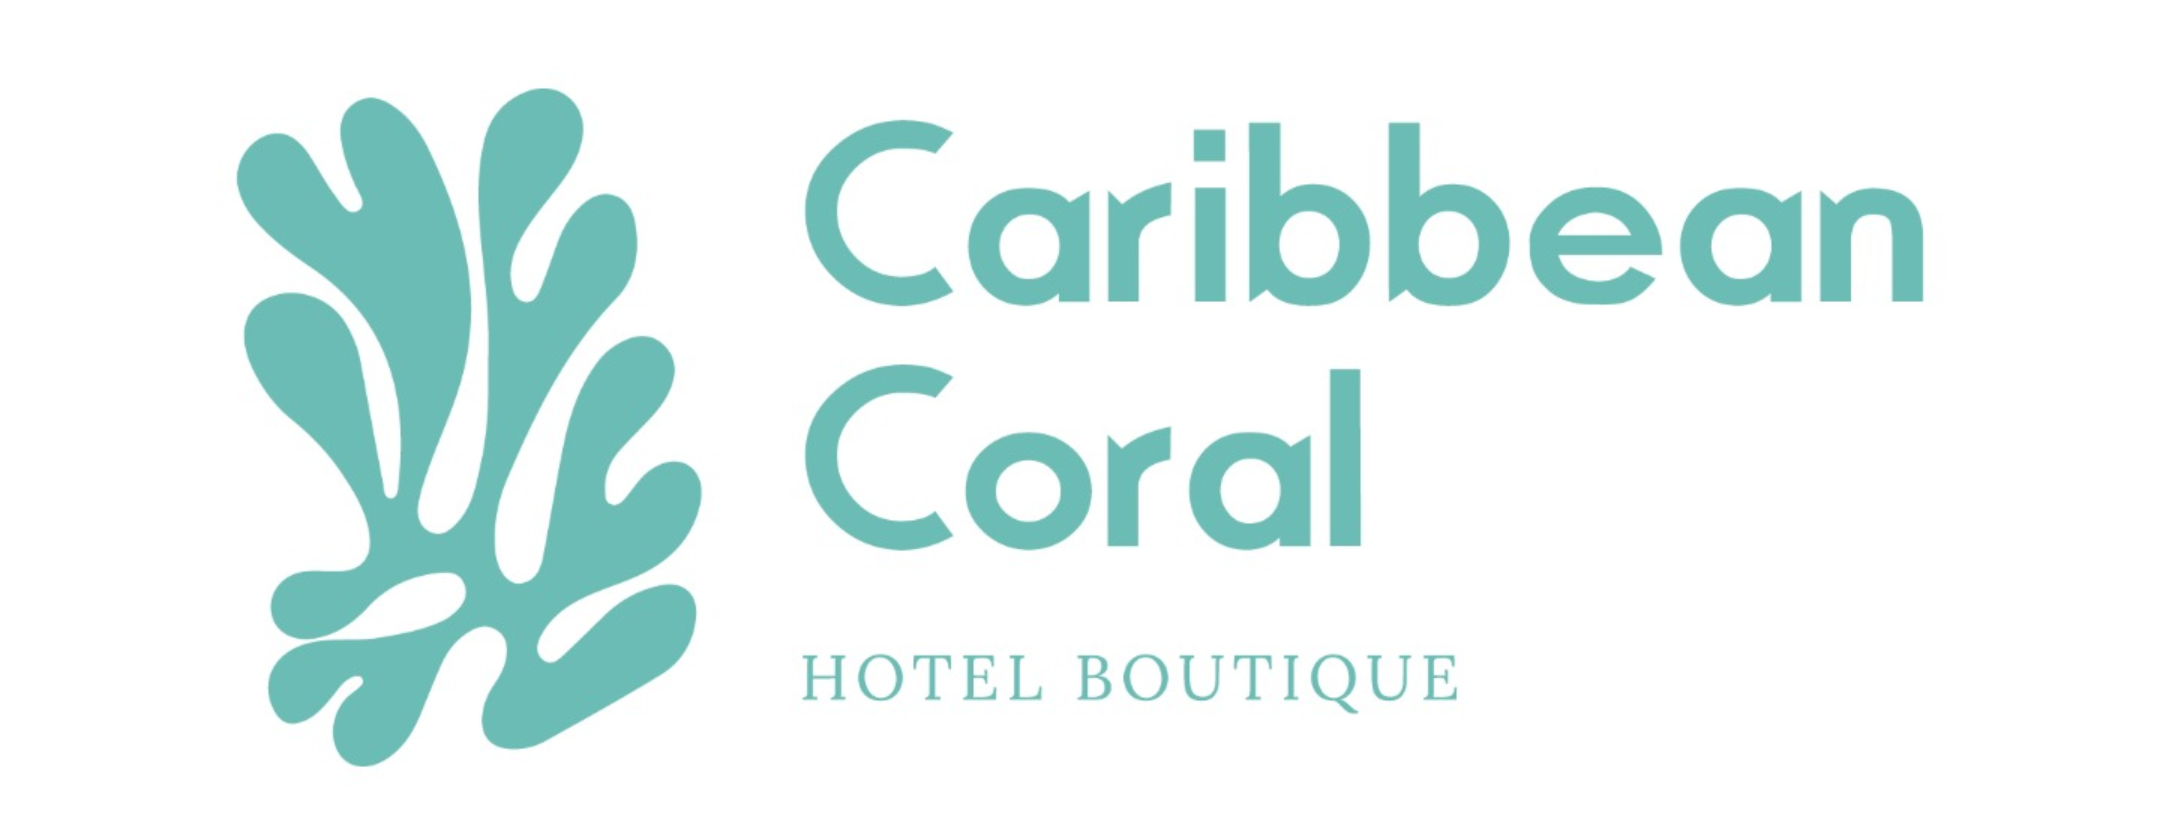 Caribbean Coral